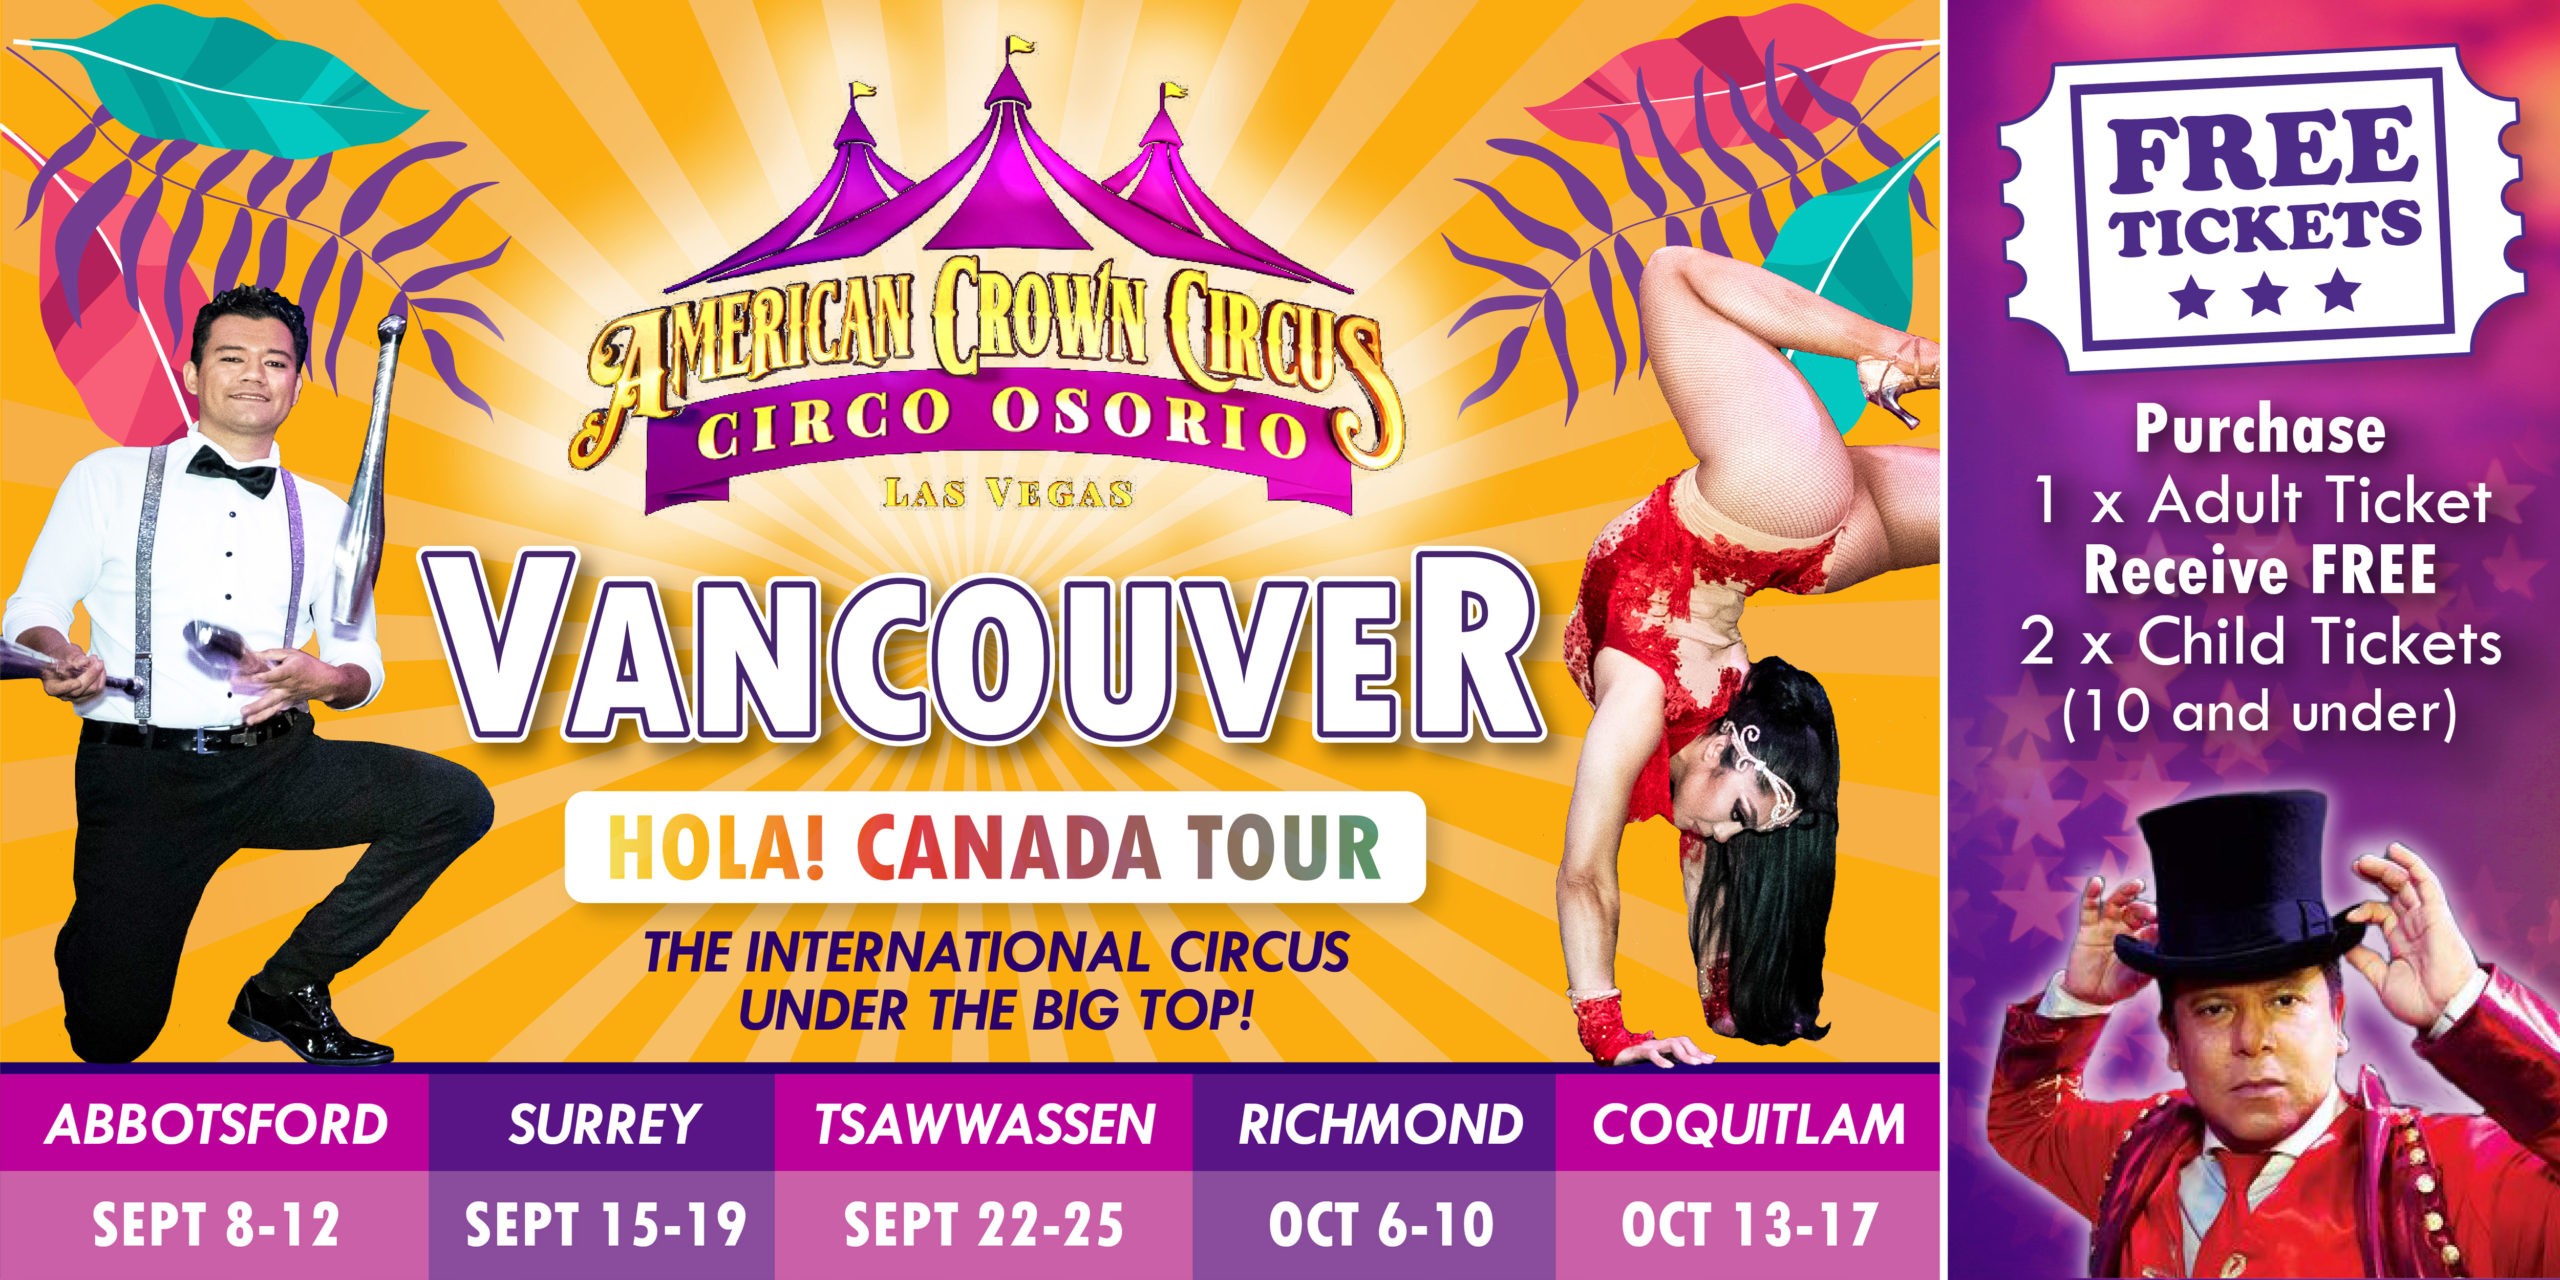 American Crown Circus - Circo Osório